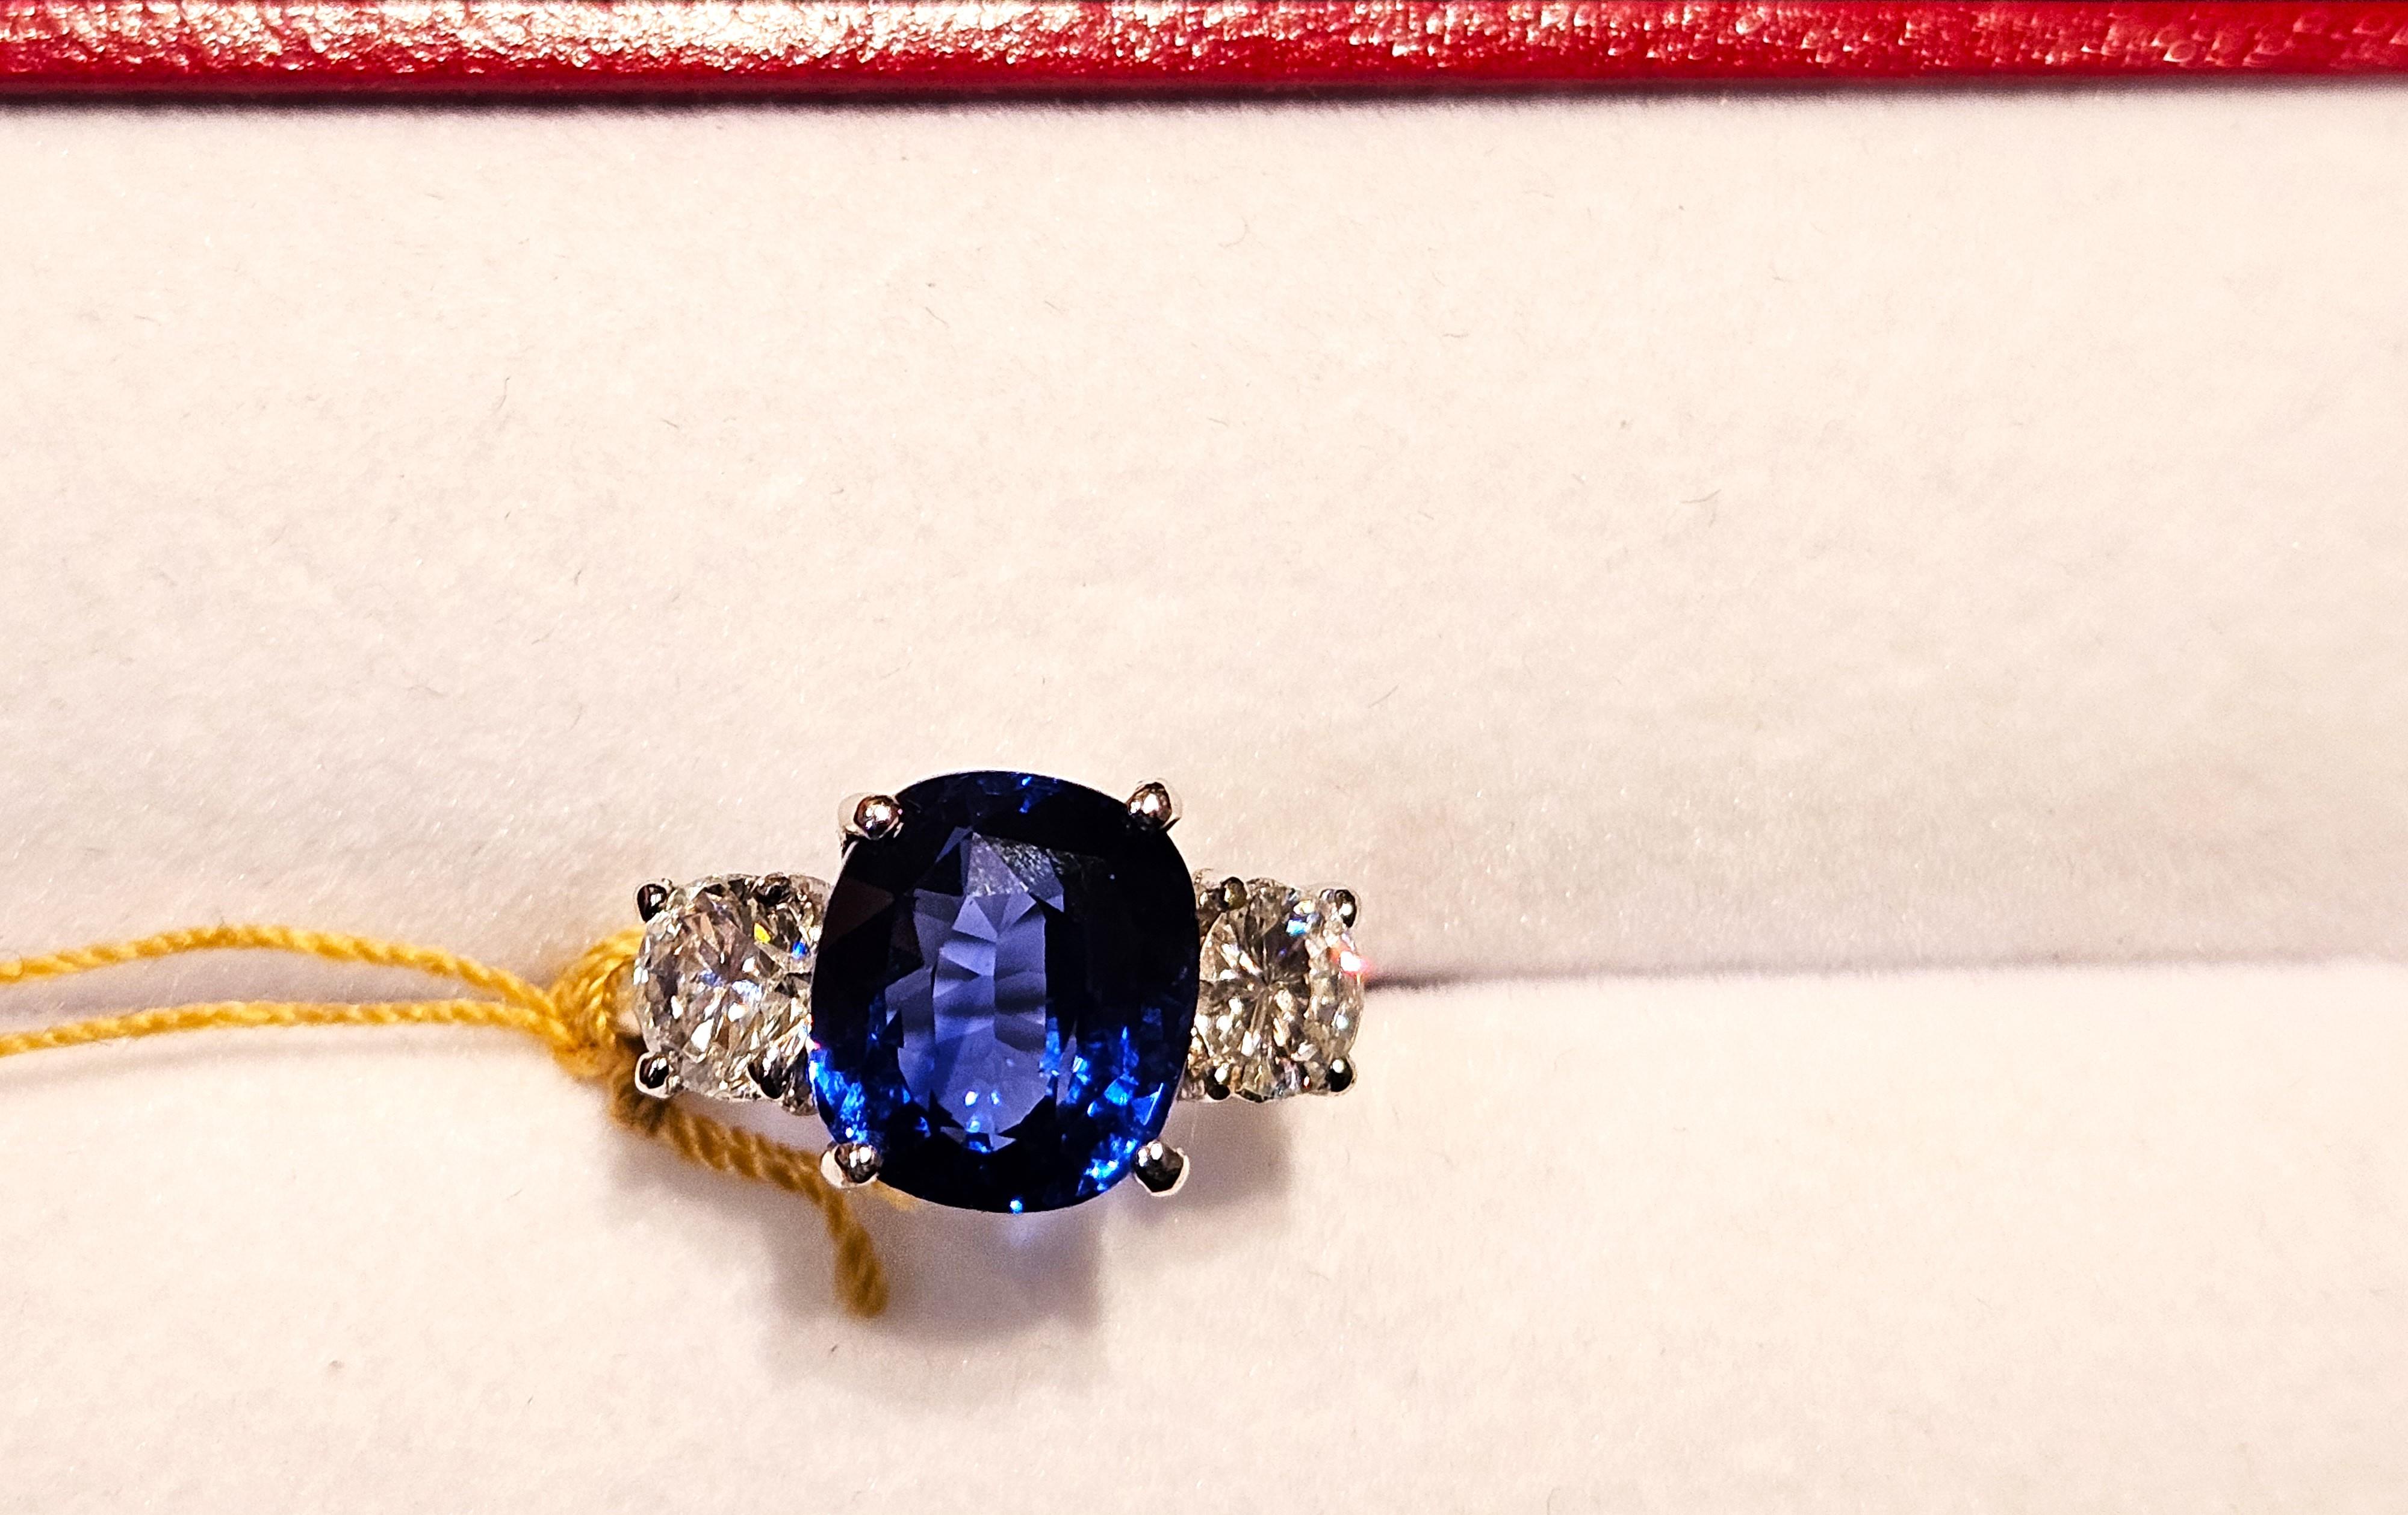 L'article suivant que nous offrons est une Rare Importante Bague en Or 18KT Spectaculaire et Brillante Large Gorgeous Blue Ceylon Sapphire Diamond. La bague se compose d'un saphir bleu de Ceylan, rare et magnifique, entouré de deux magnifiques